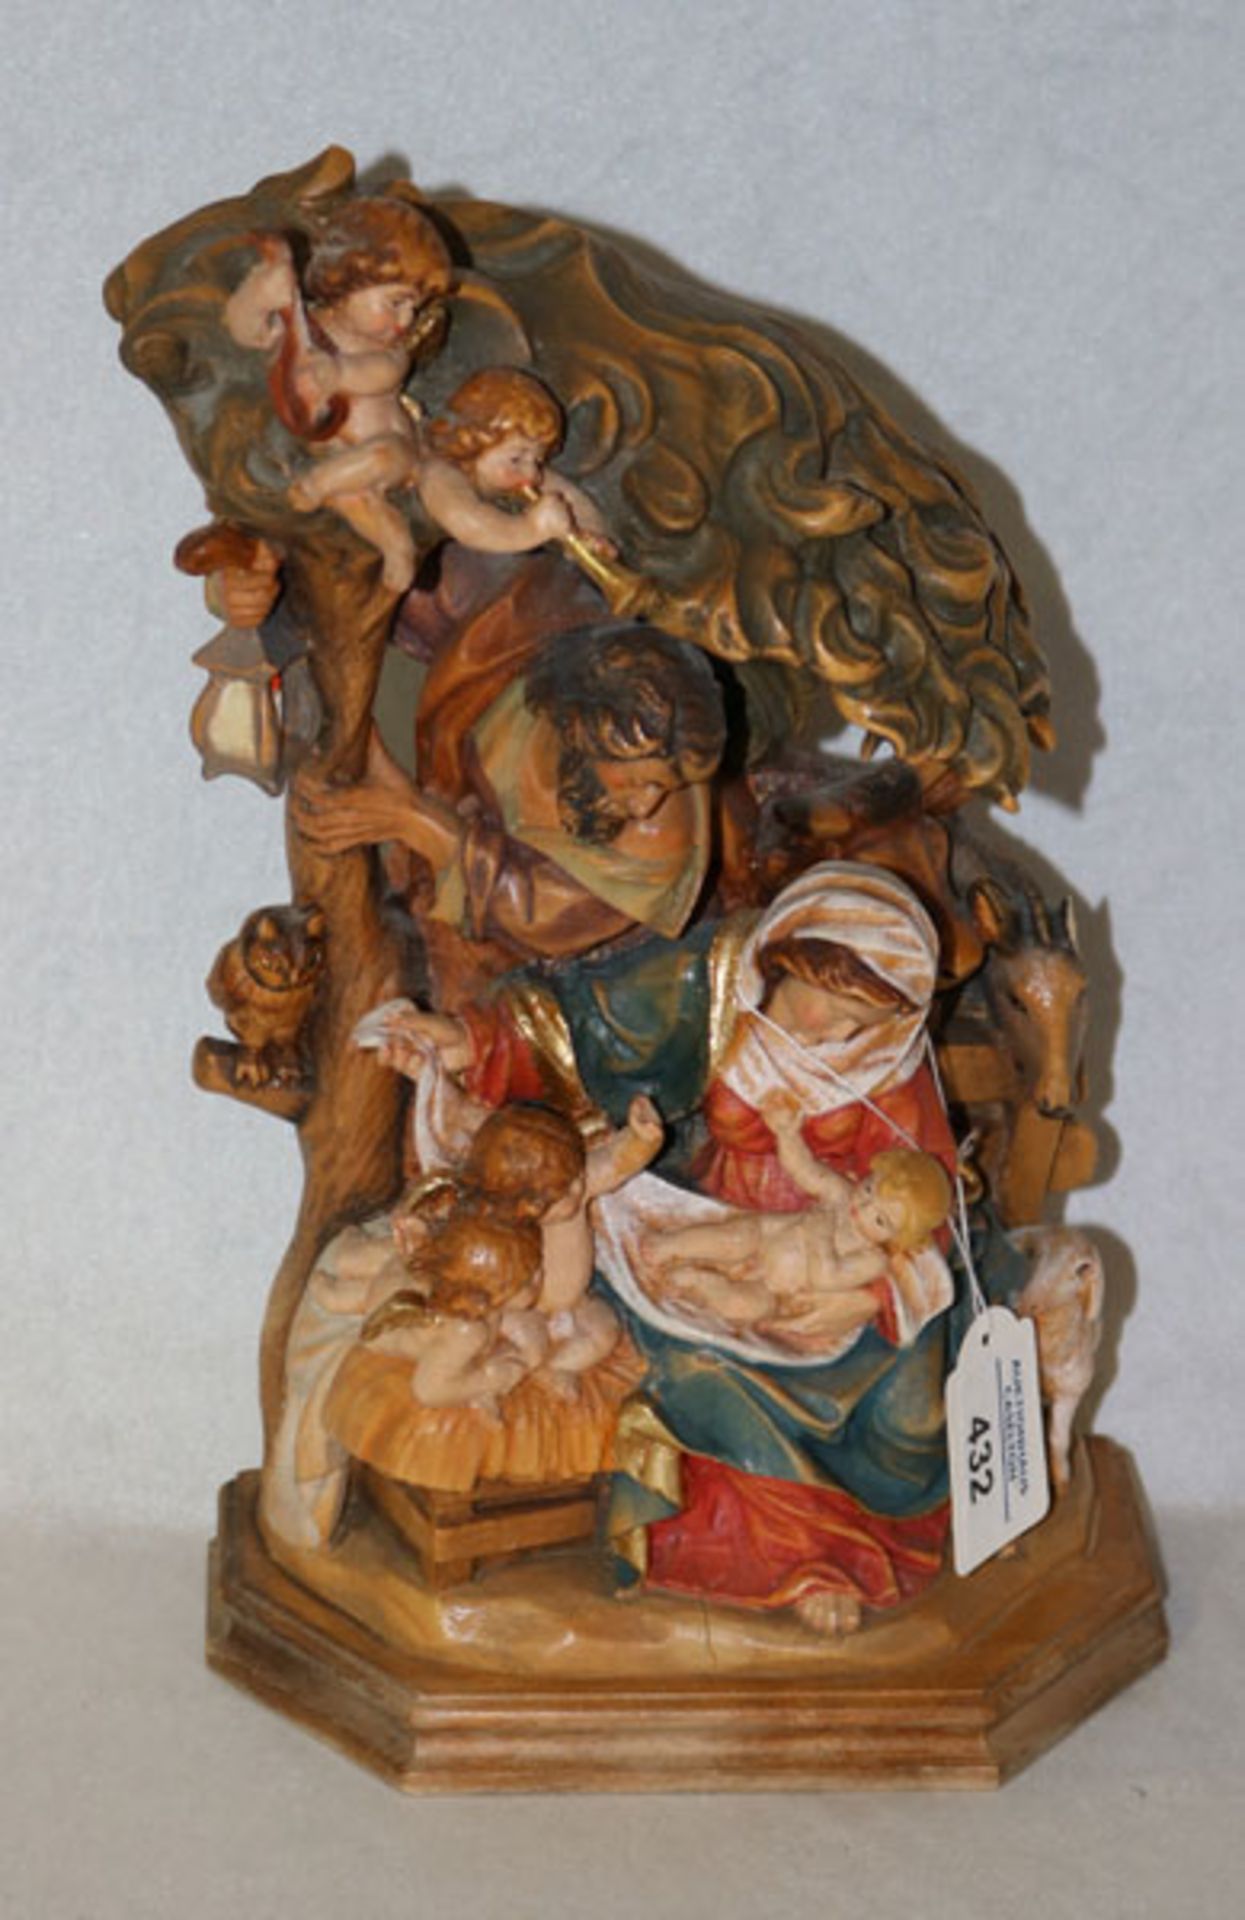 Holz Figurengruppe 'Heilige Familie', farbig gefaßt, ein Ohr vom Esel abgebrochen, H 32 cm, B 19 cm